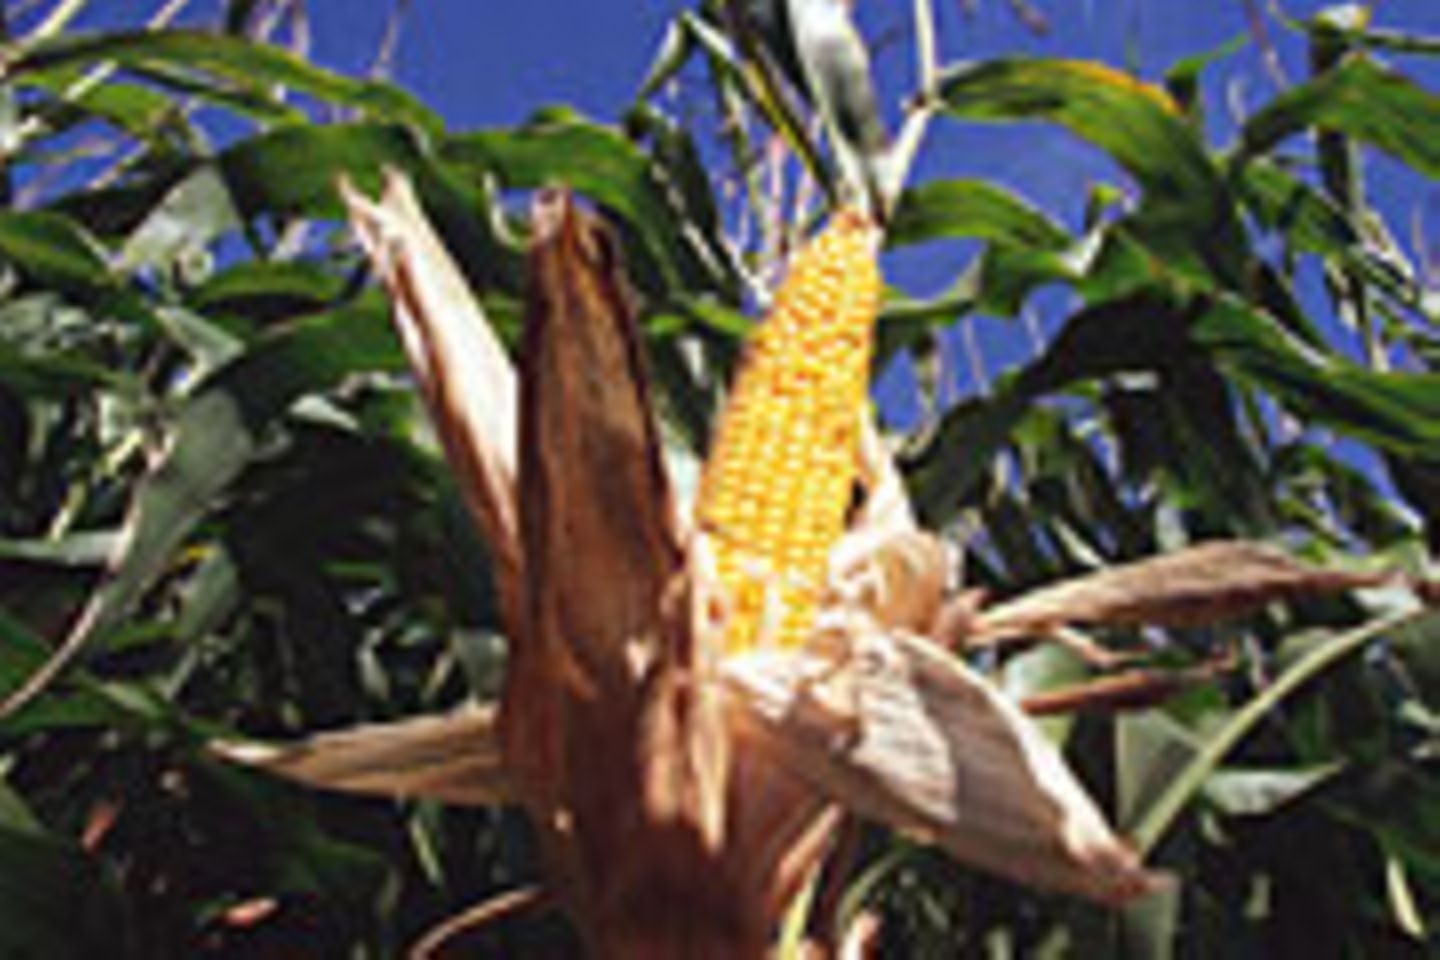 Mais ist eine der ältesten und wichtigsten Kulturpflanzen der Welt